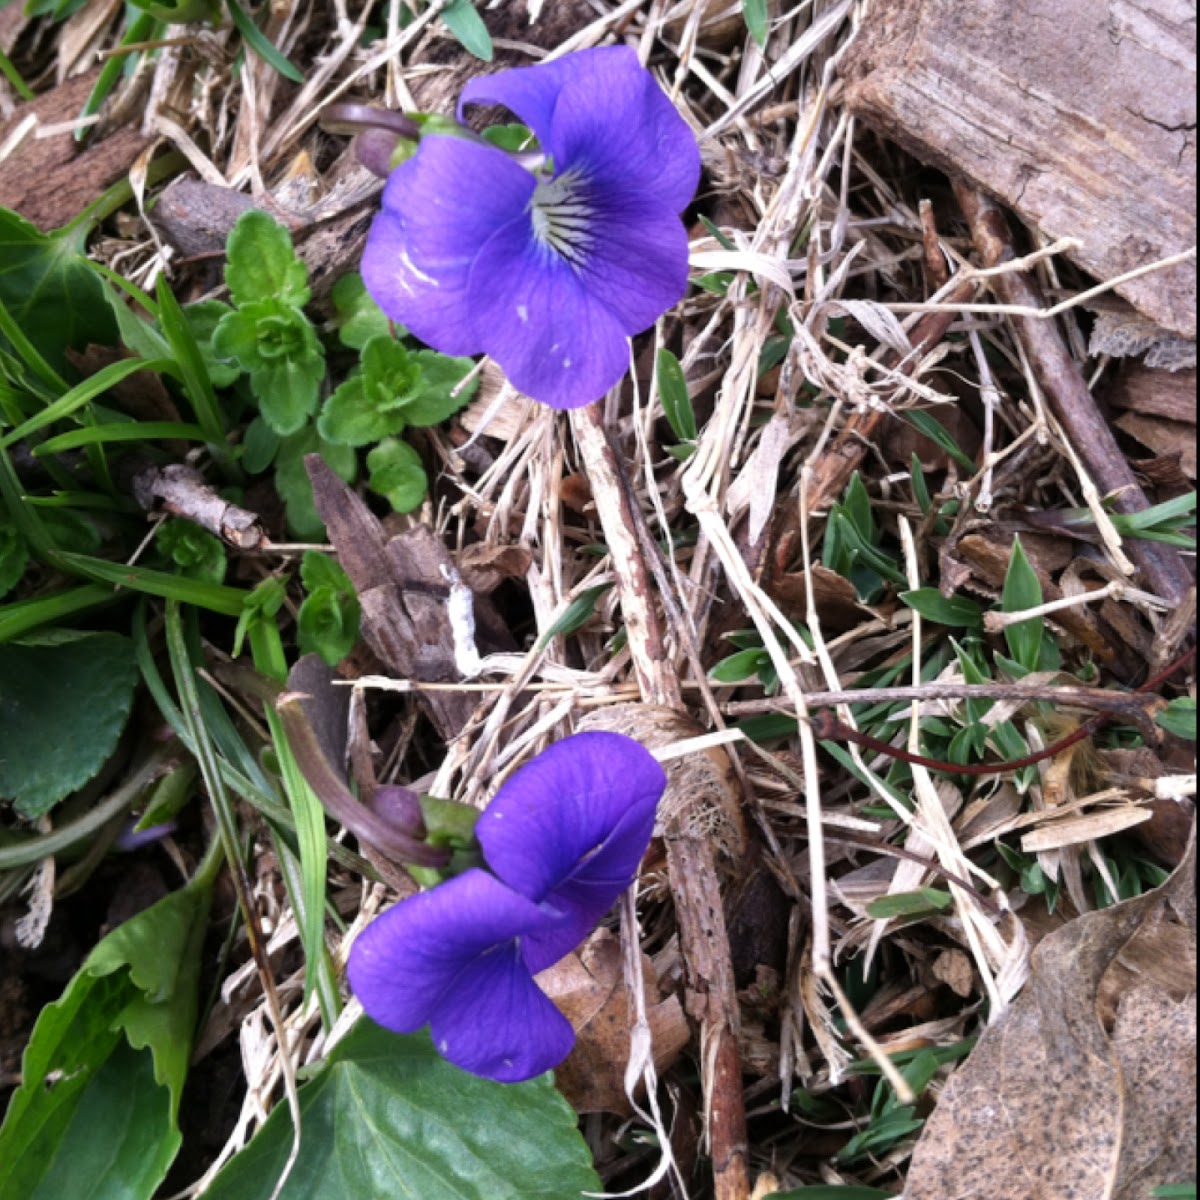 Wild violets